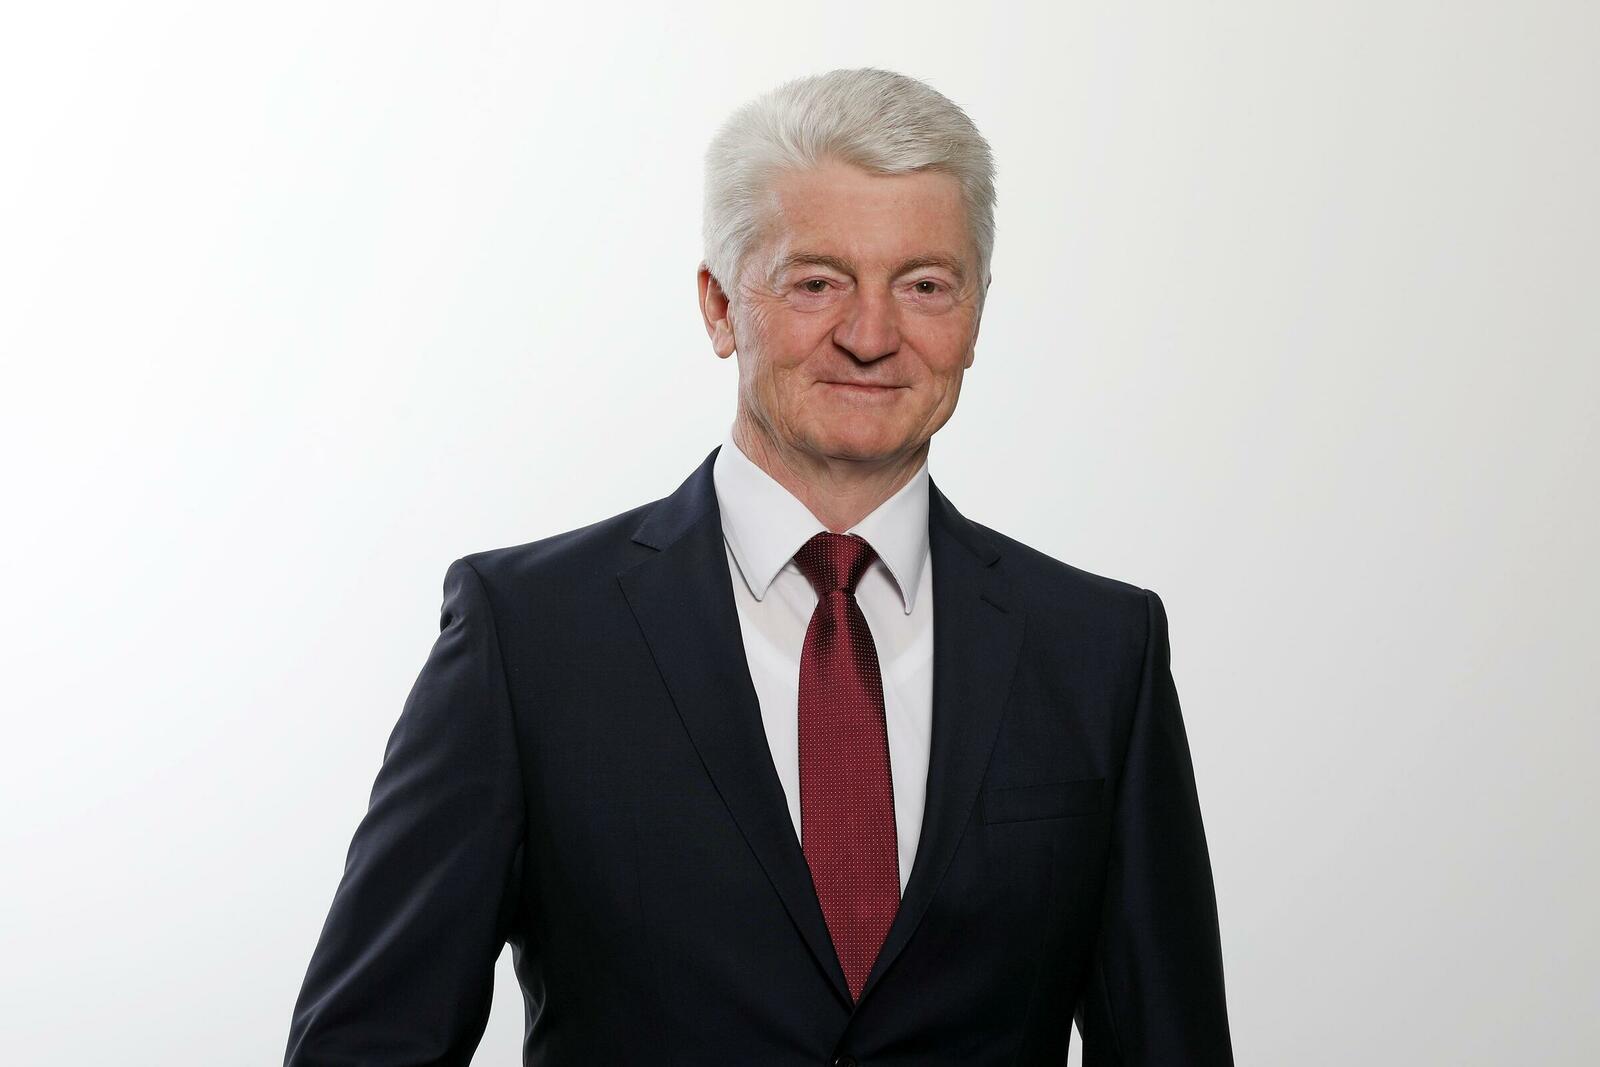  Dr. Hiesinger, früherer Vorstandsvorsitzender der ThyssenKrupp AG, gehört dem ZF-Gremium seit Jahresbeginn 2021 an.